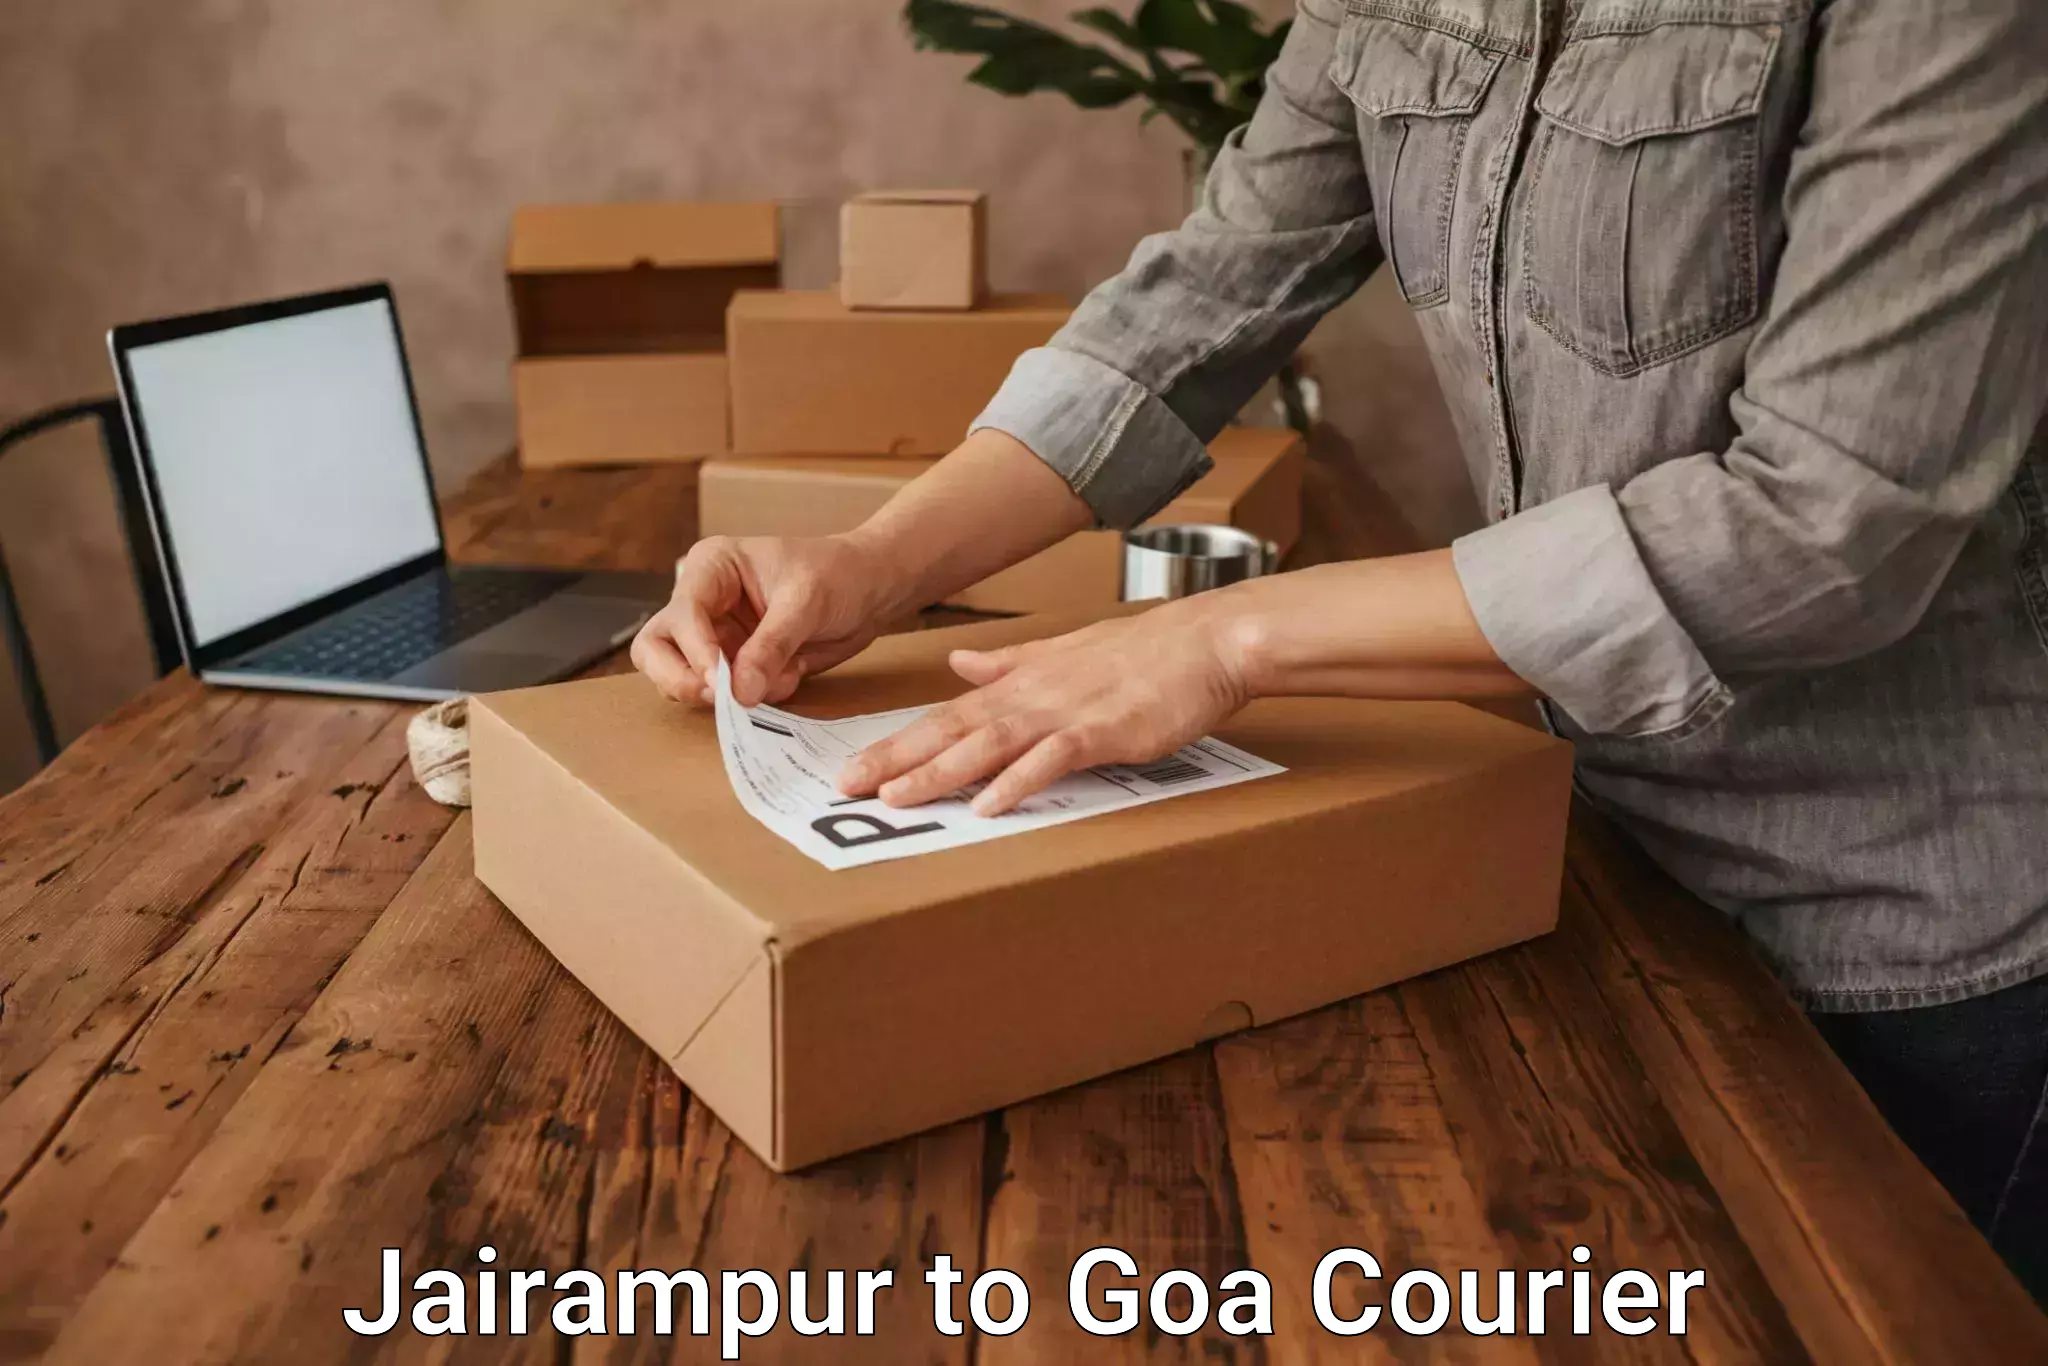 24-hour courier service Jairampur to Panjim